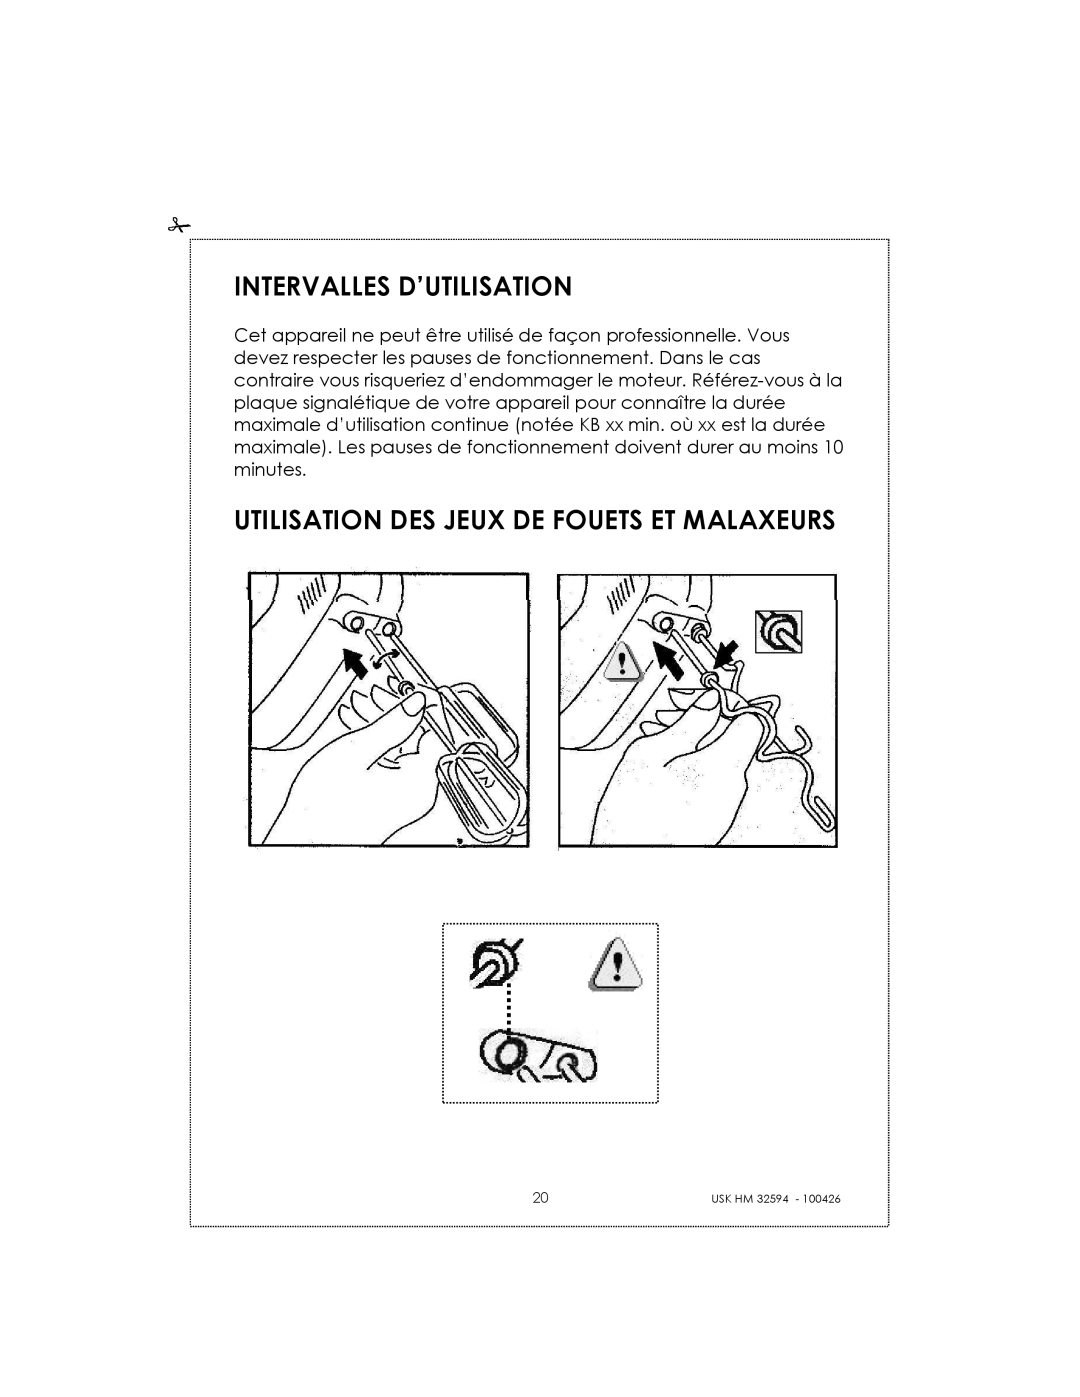 Kalorik USK HM 32594 manual Intervalles D’Utilisation, Utilisation Des Jeux De Fouets Et Malaxeurs 